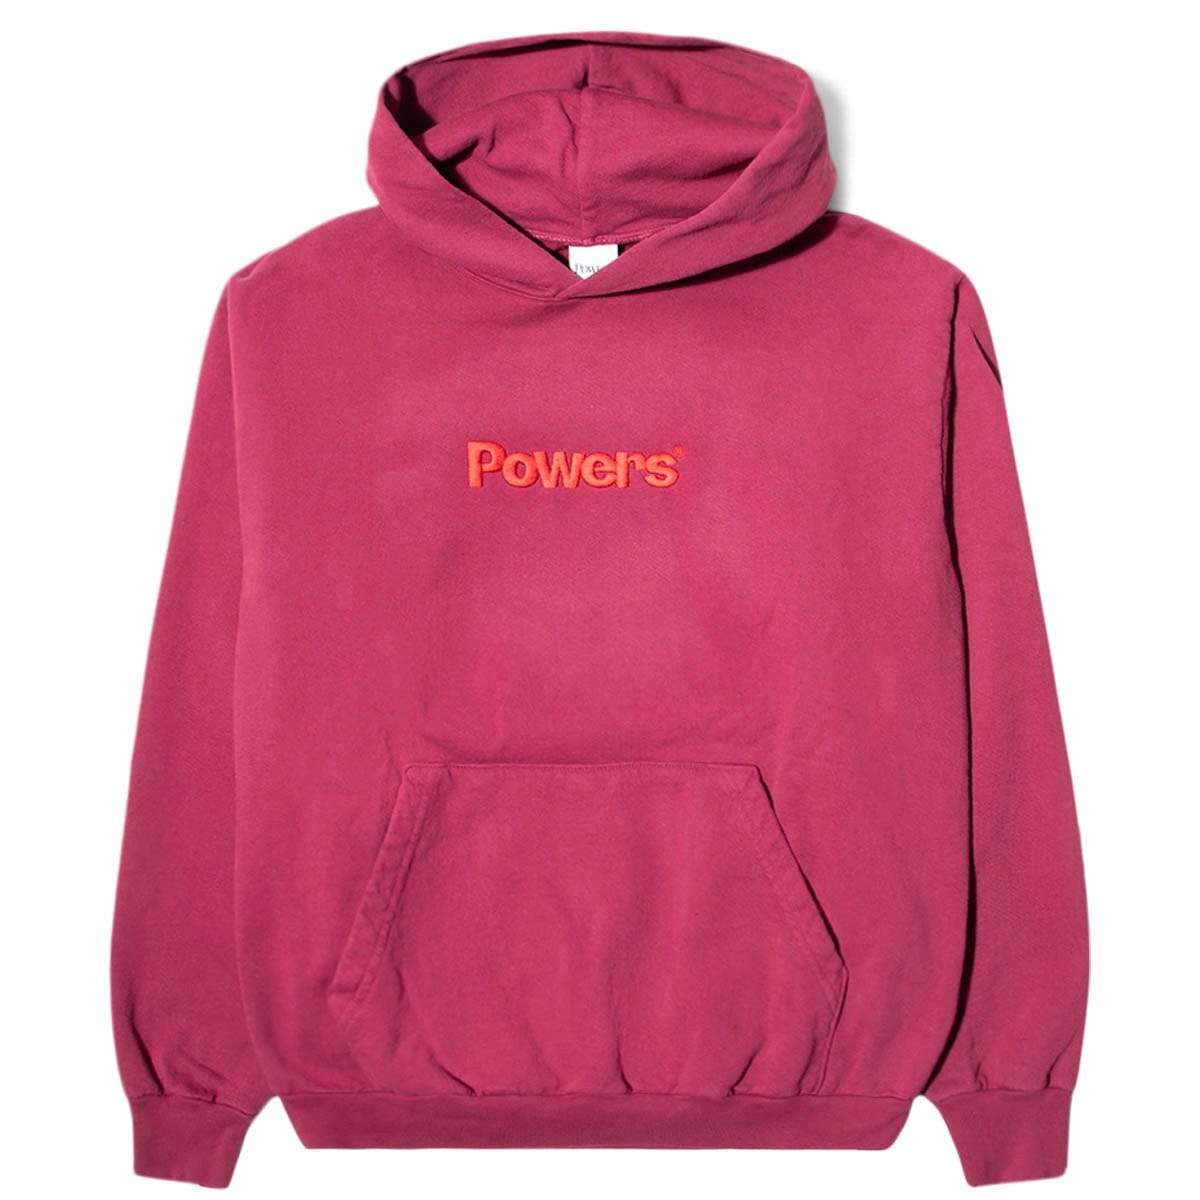 POWERS Hoodies & Sweatshirts POWERS LOGO HOODIE